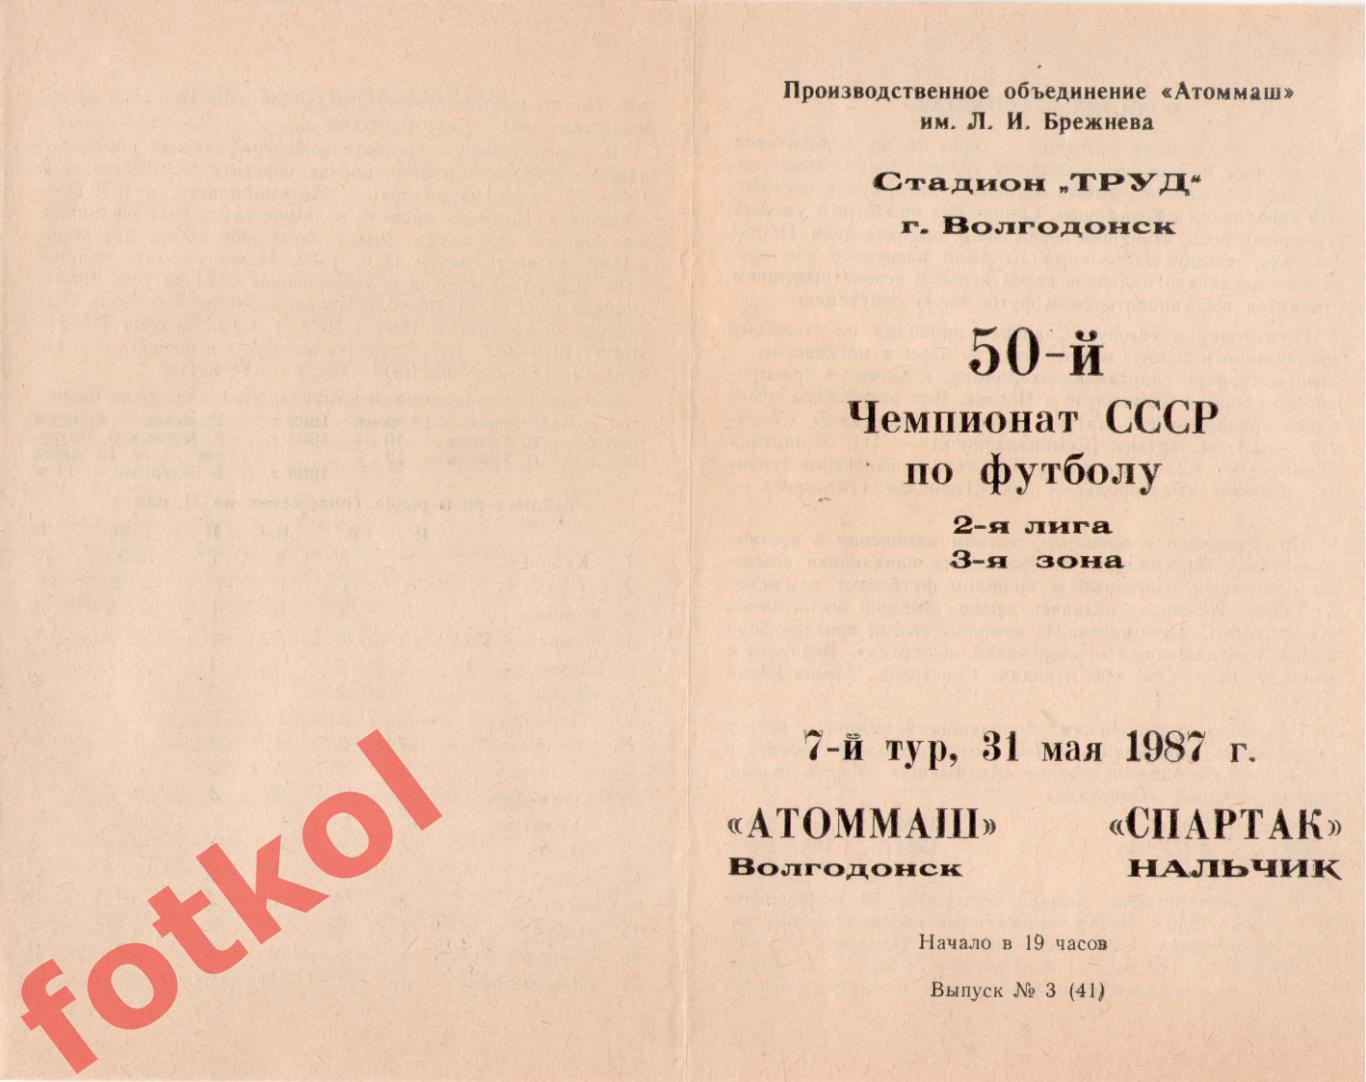 АТОММАШ Волгодонск - СПАРТАК Нальчик 31.05.1987